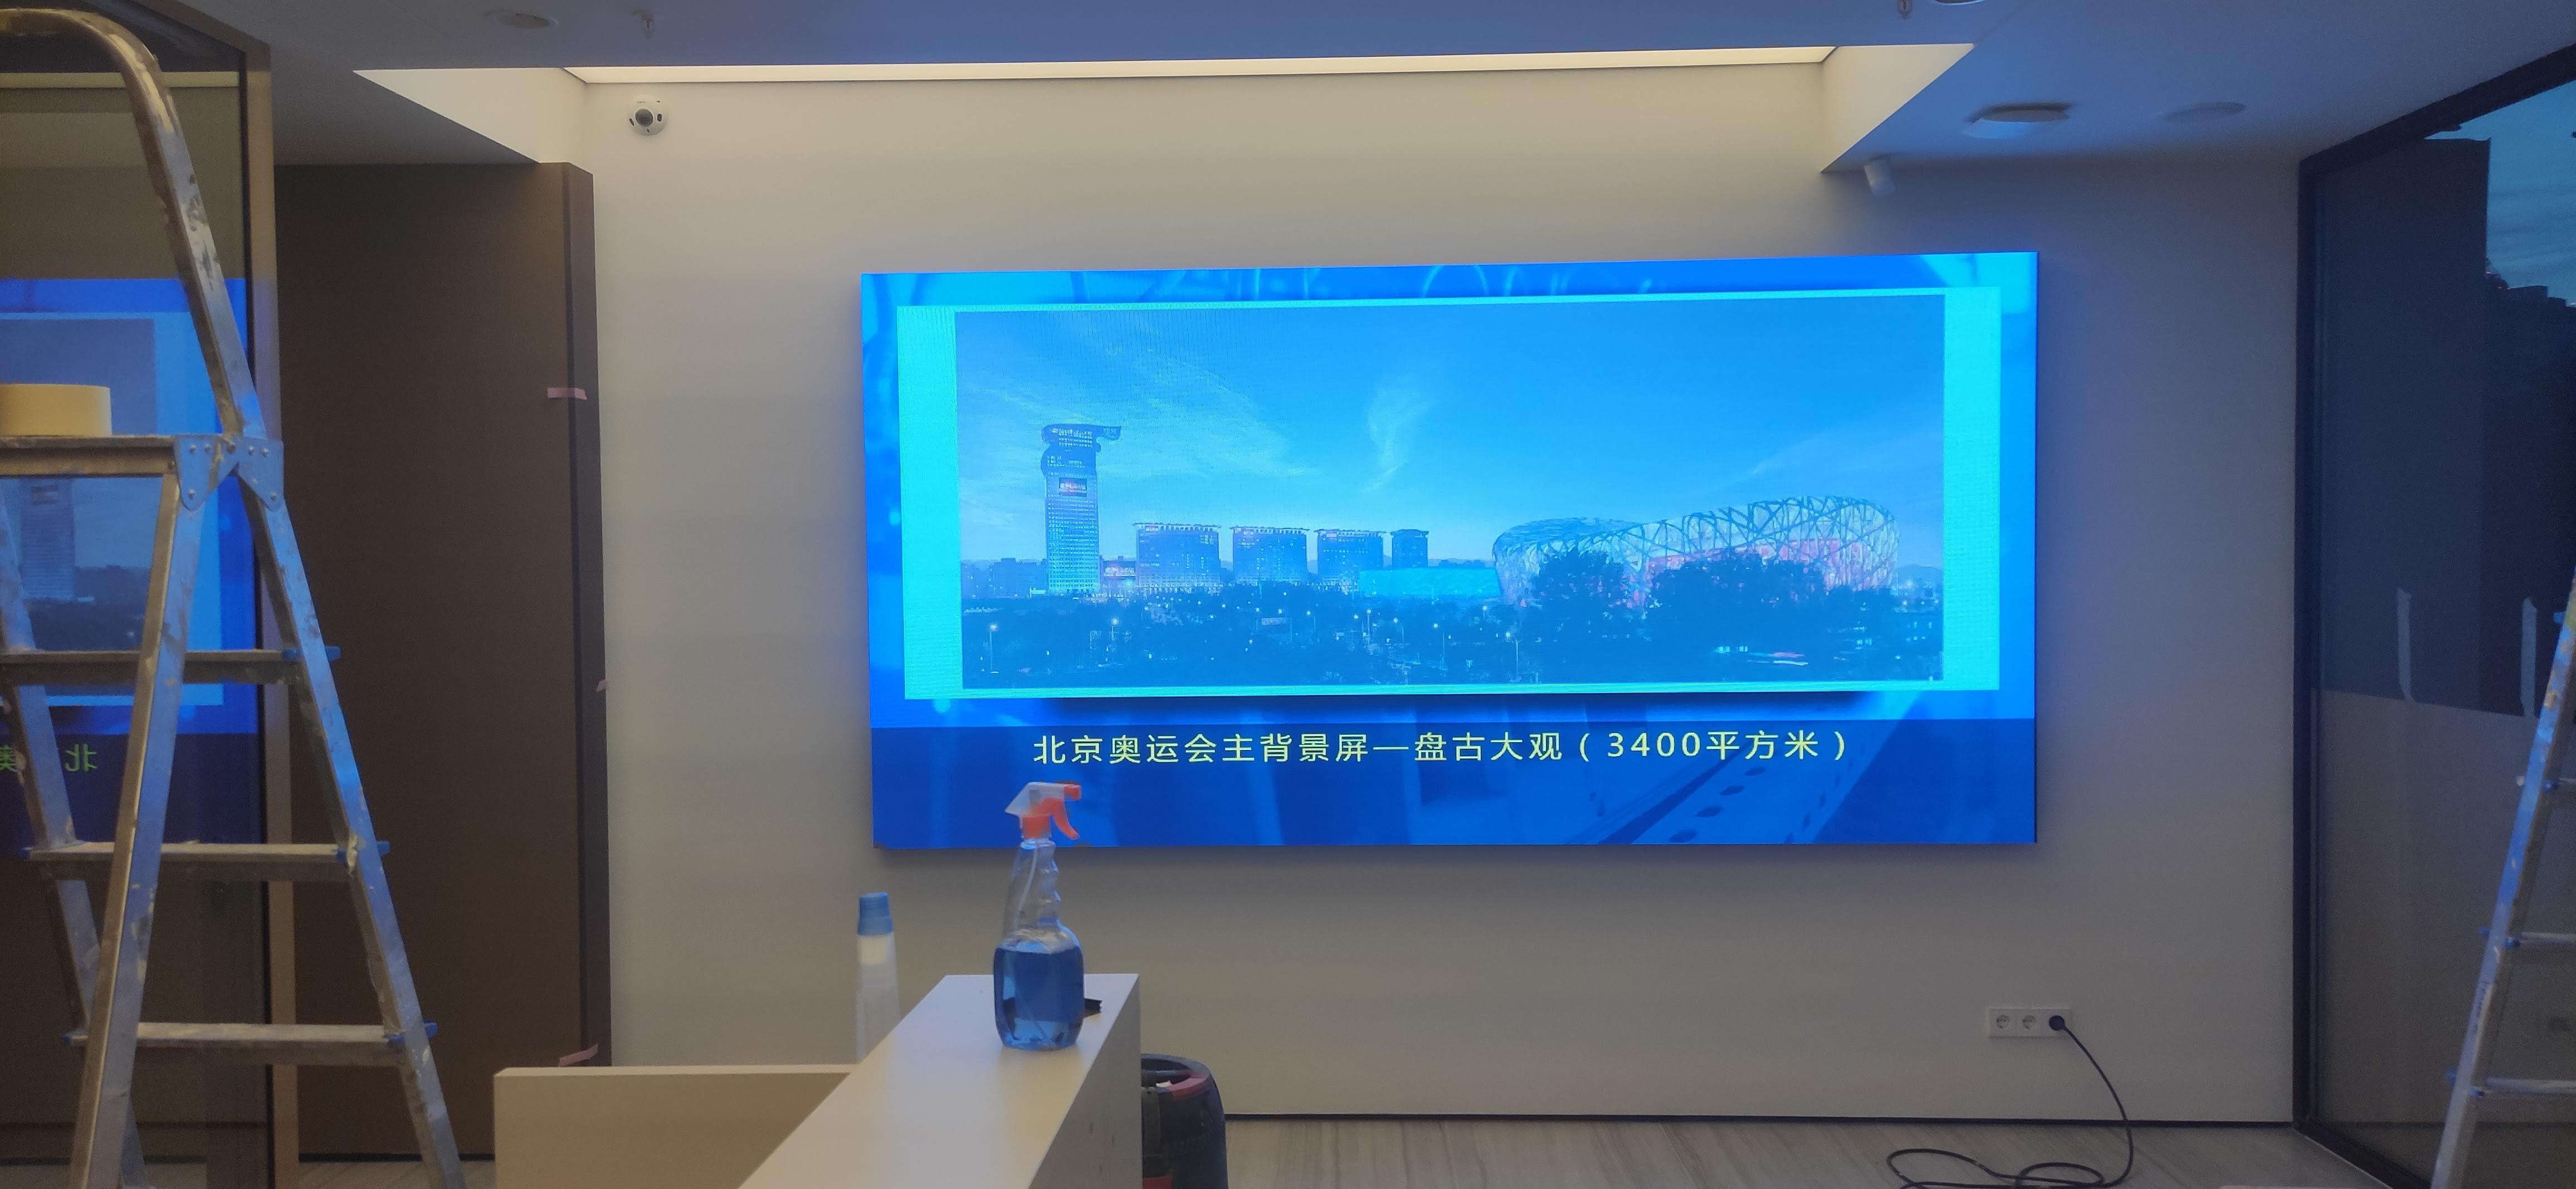 Светодиодный экран SIGNAGELED XI-2.5 в офисе девелоперской компании Фото 3